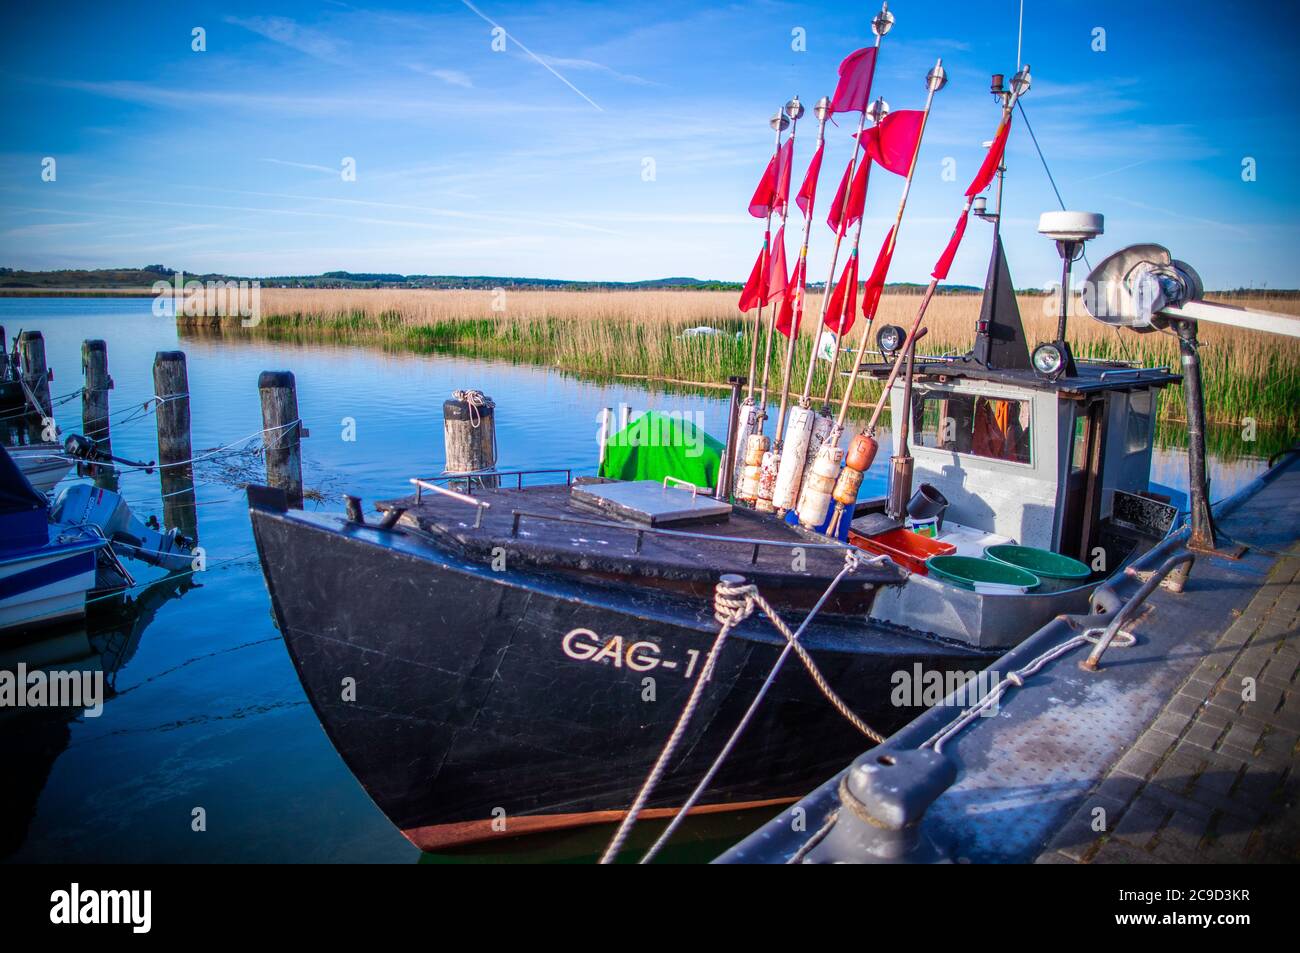 Gager, Deutschland. Mai 2020. Im kleinen Hafen von Gager befindet sich ein kleiner Fischkutter mit Fahnenmasten zur Markierung der Kiemen. Quelle: Jens Büttner/dpa-Zentralbild/ZB/dpa/Alamy Live News Stockfoto